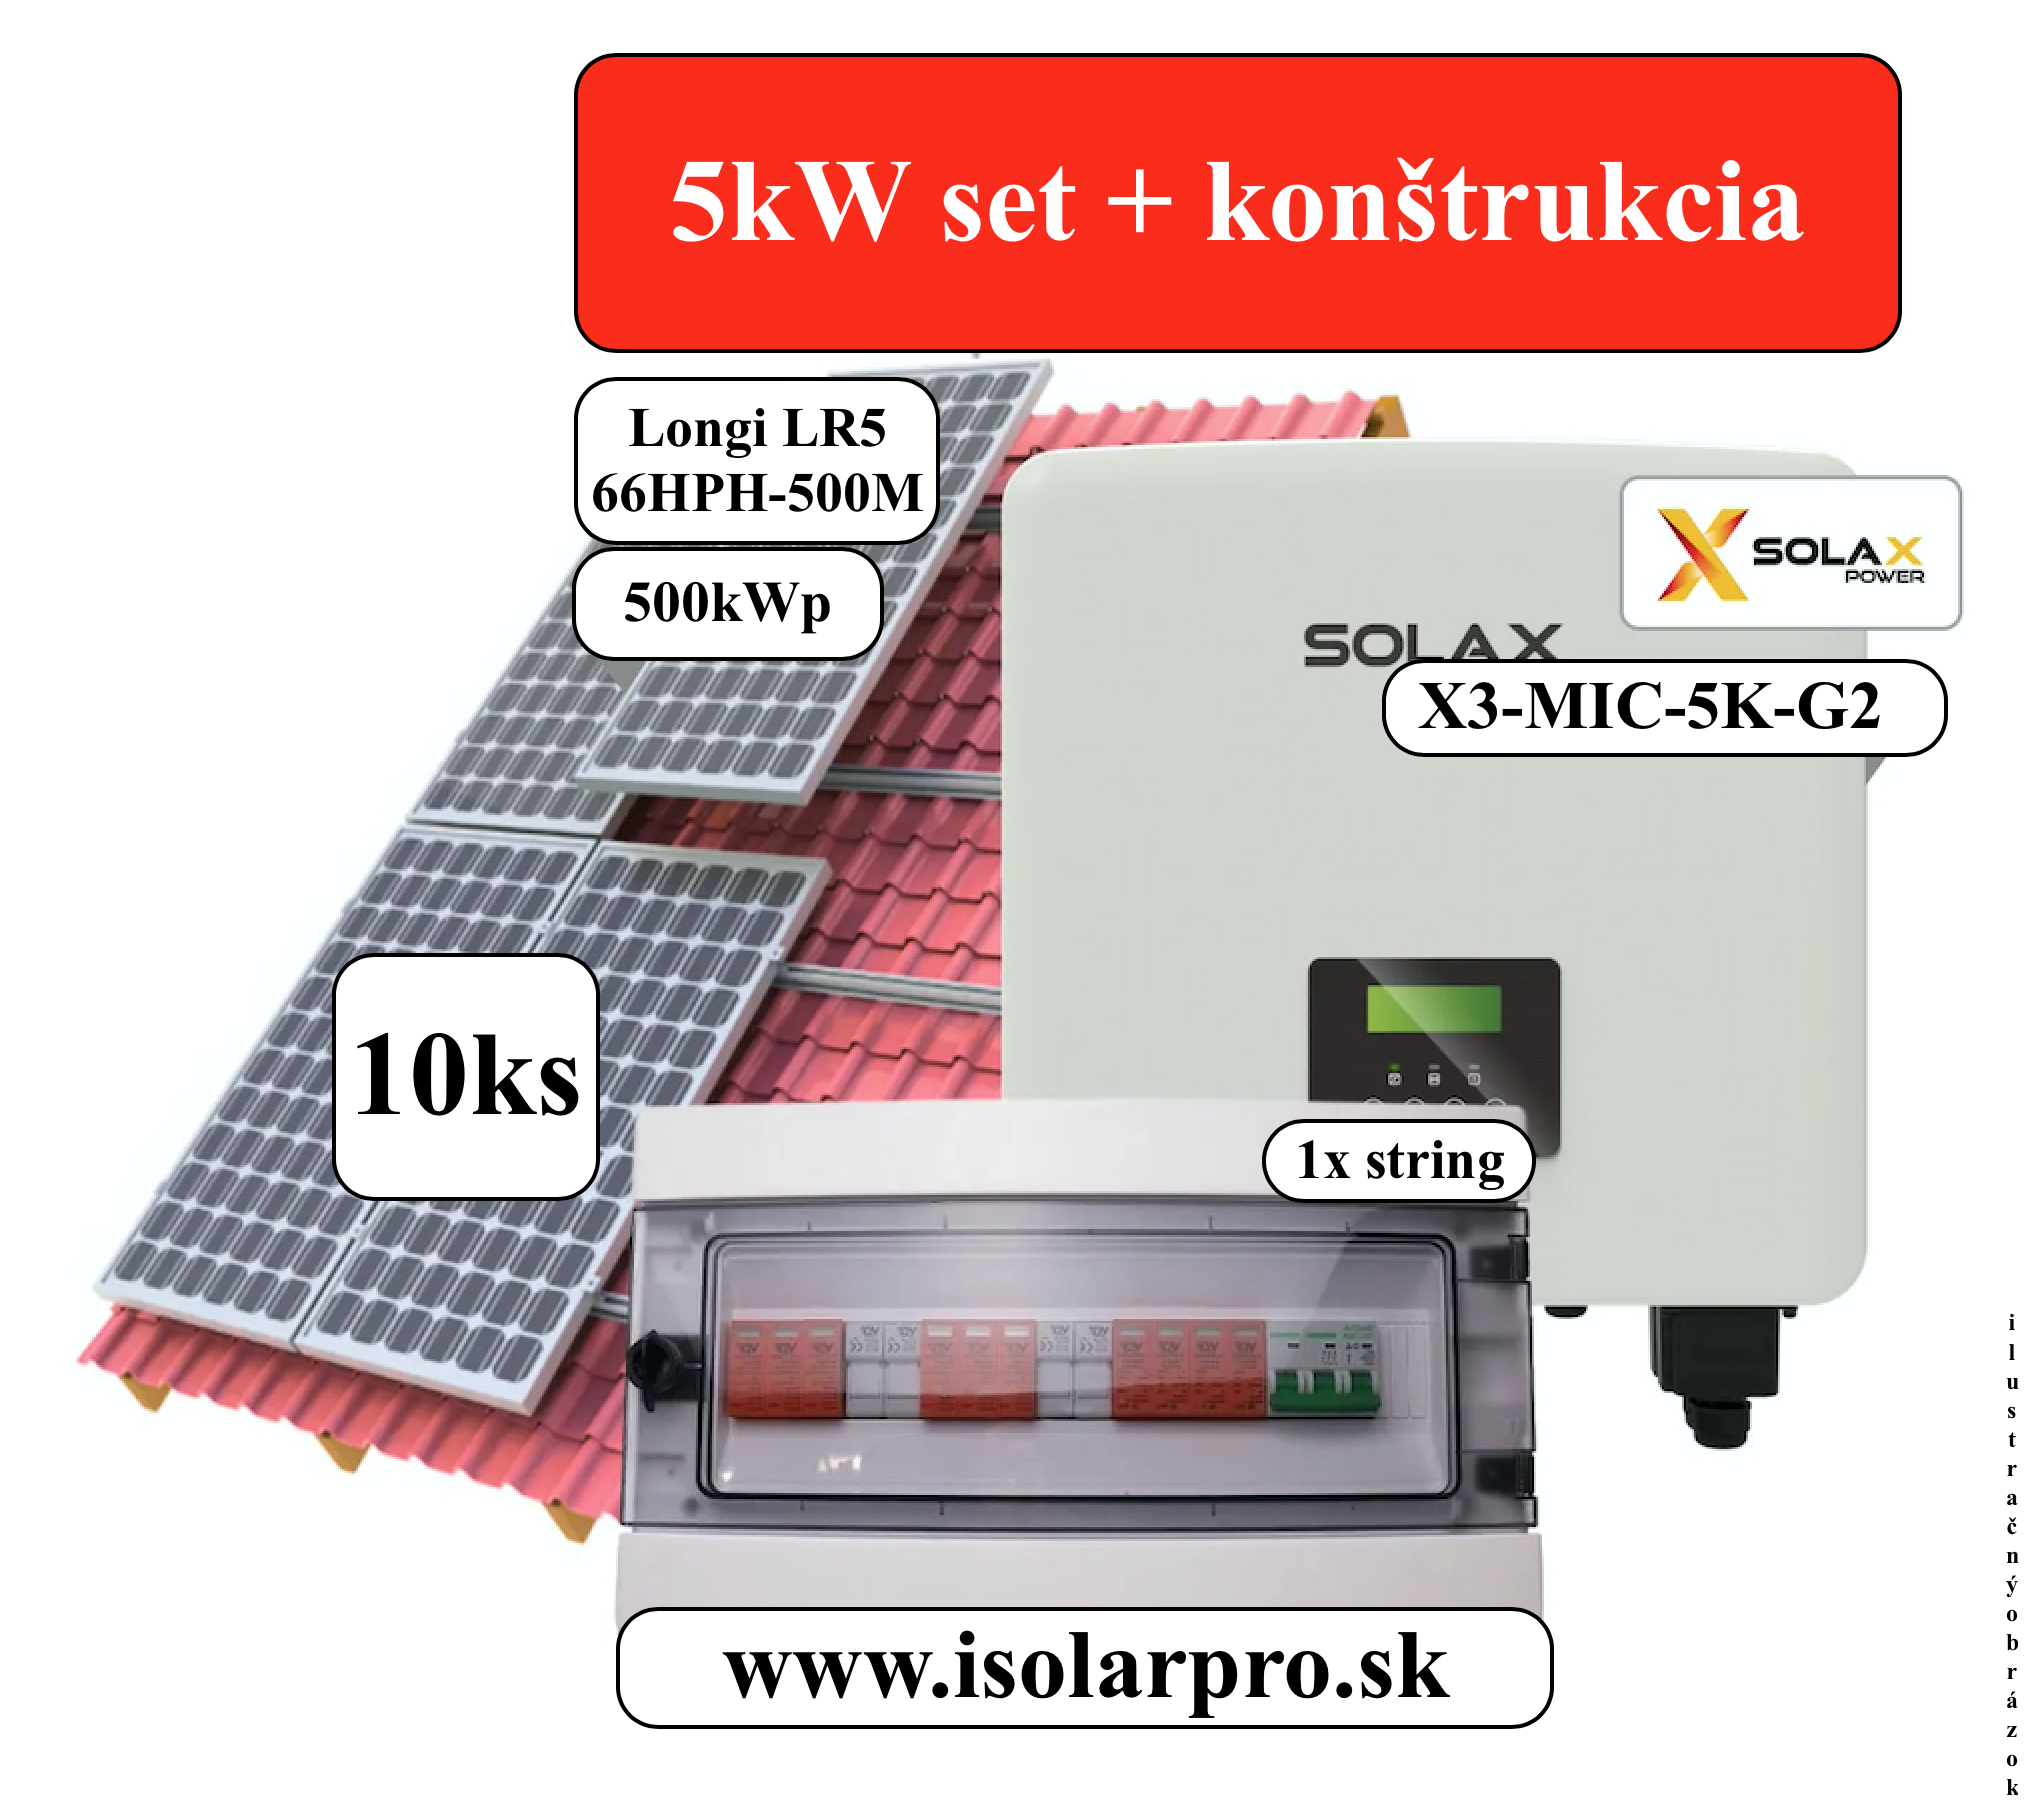 5kWp Trojfázový fotovoltický set, On-grid SolaX + konštrukcia